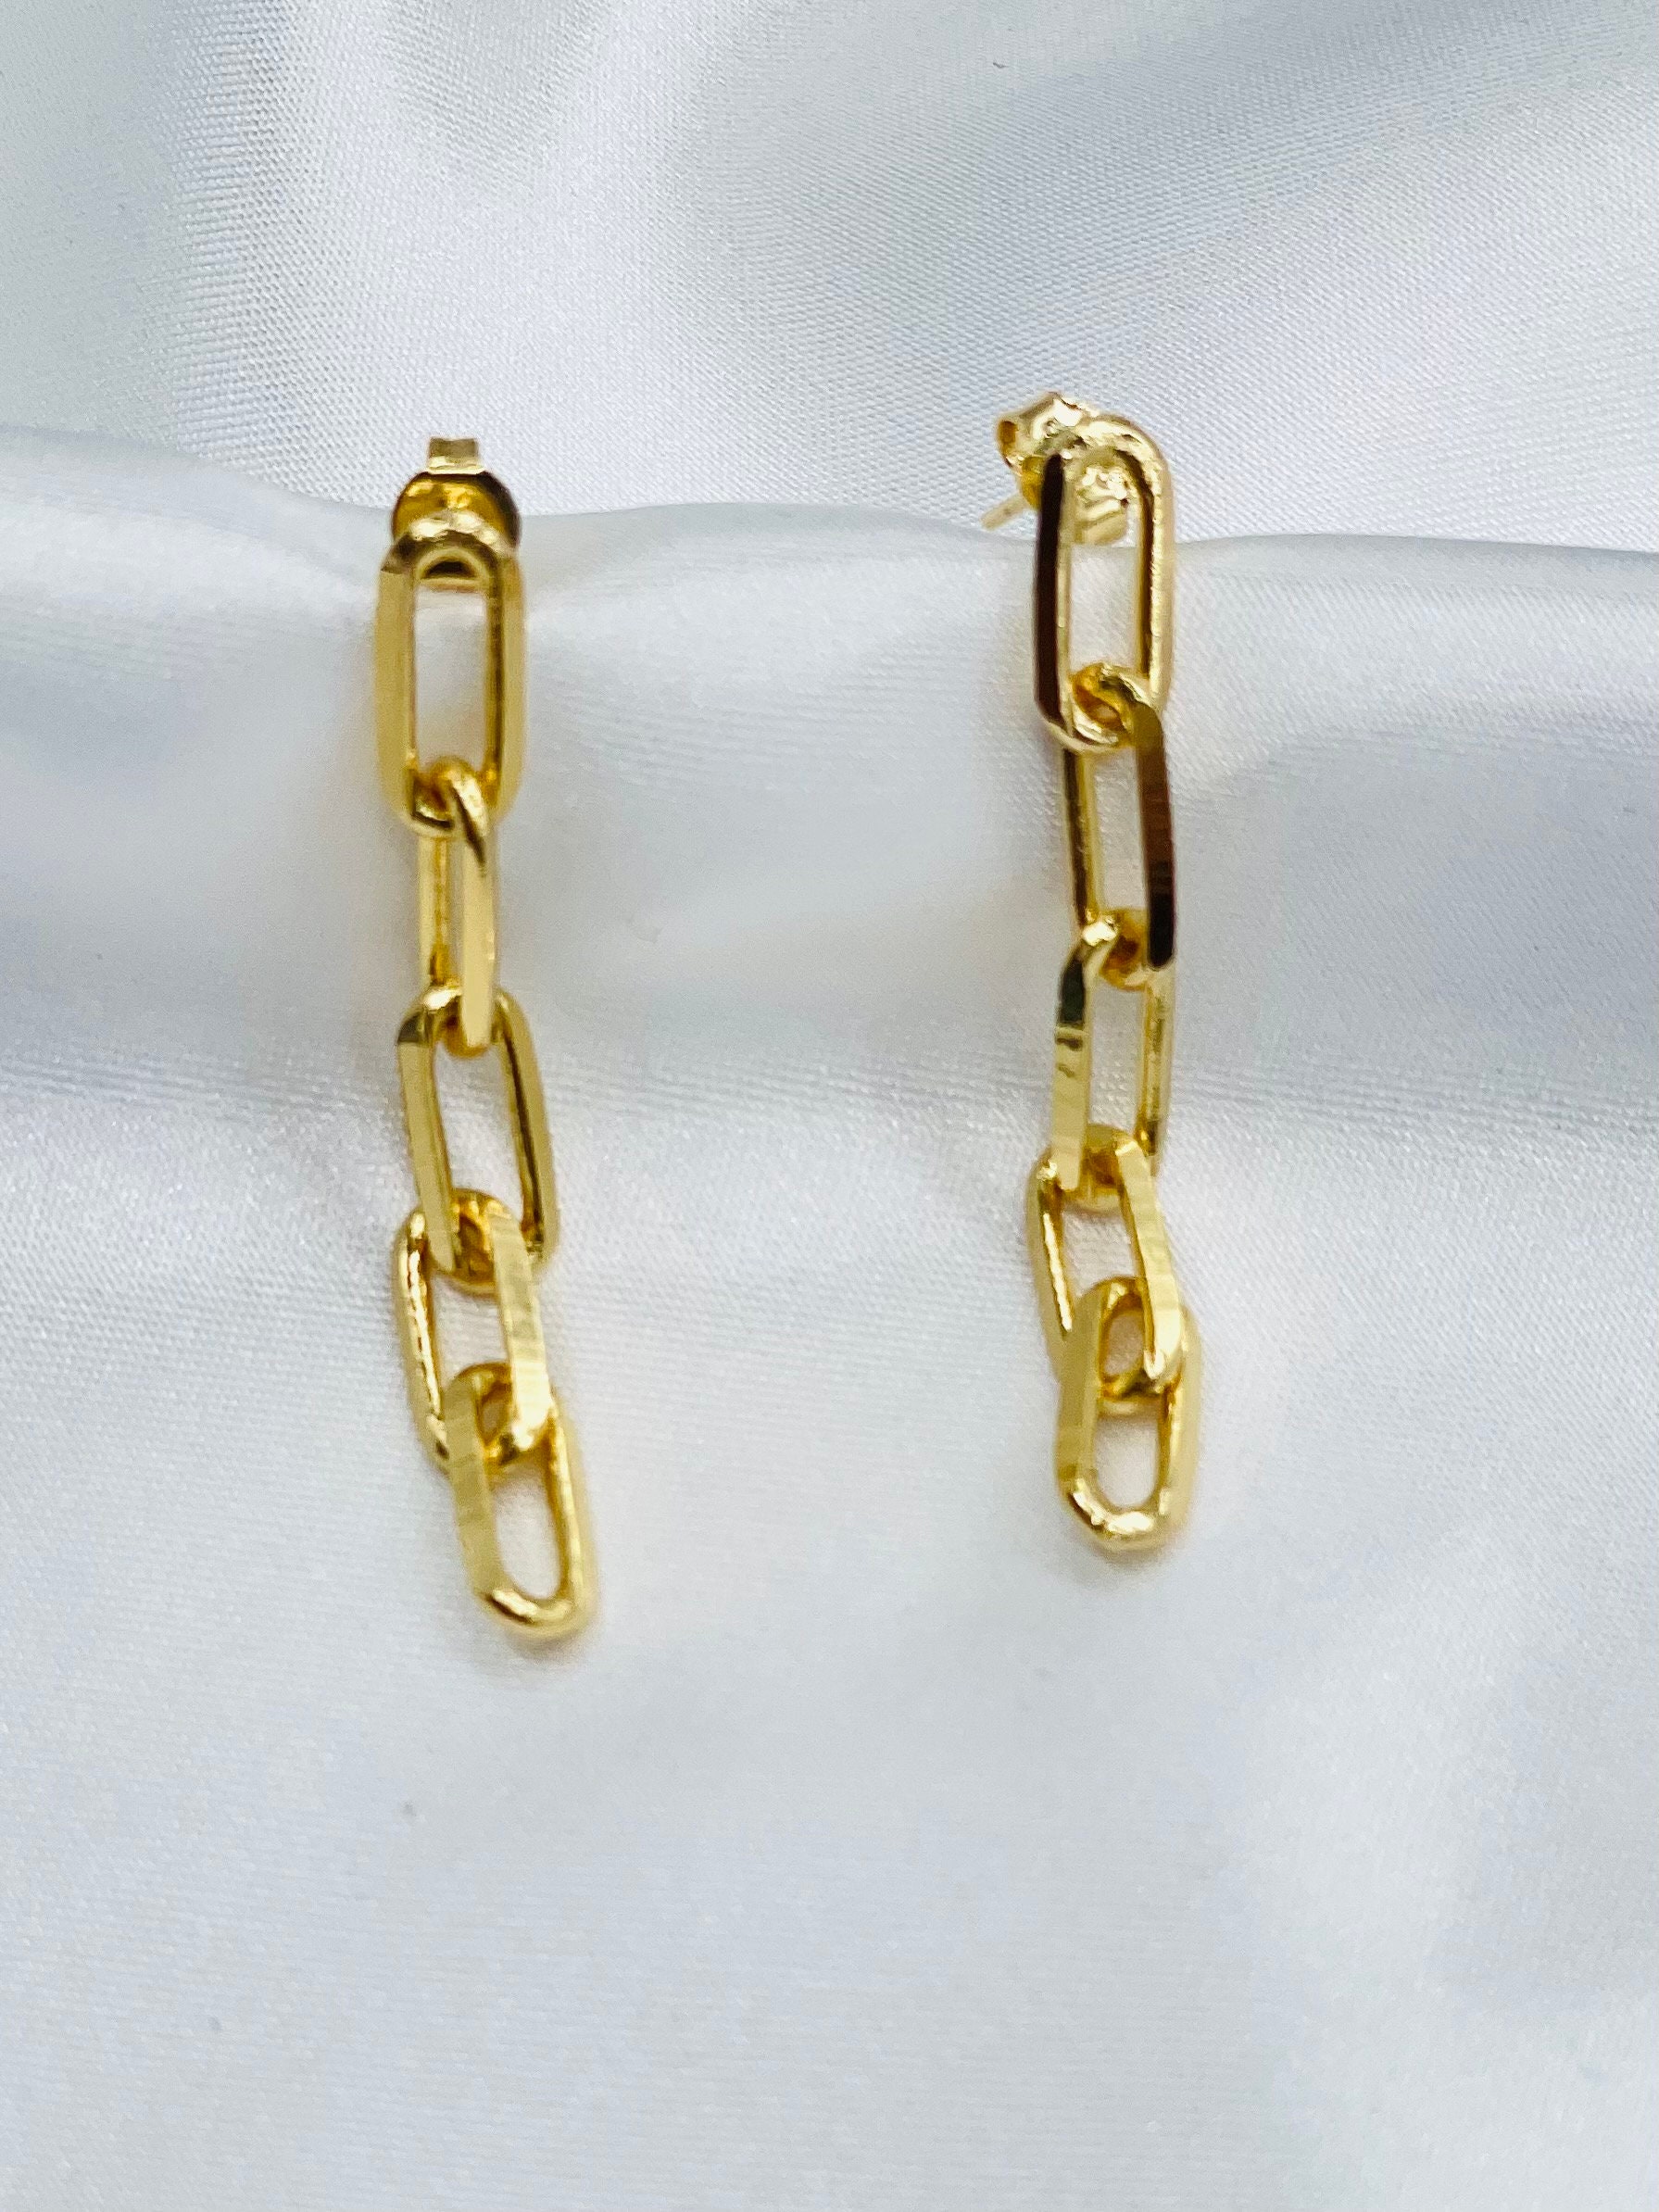 Paper Clip Earrings Chain Link Earrings 18K Gold Filled | Etsy